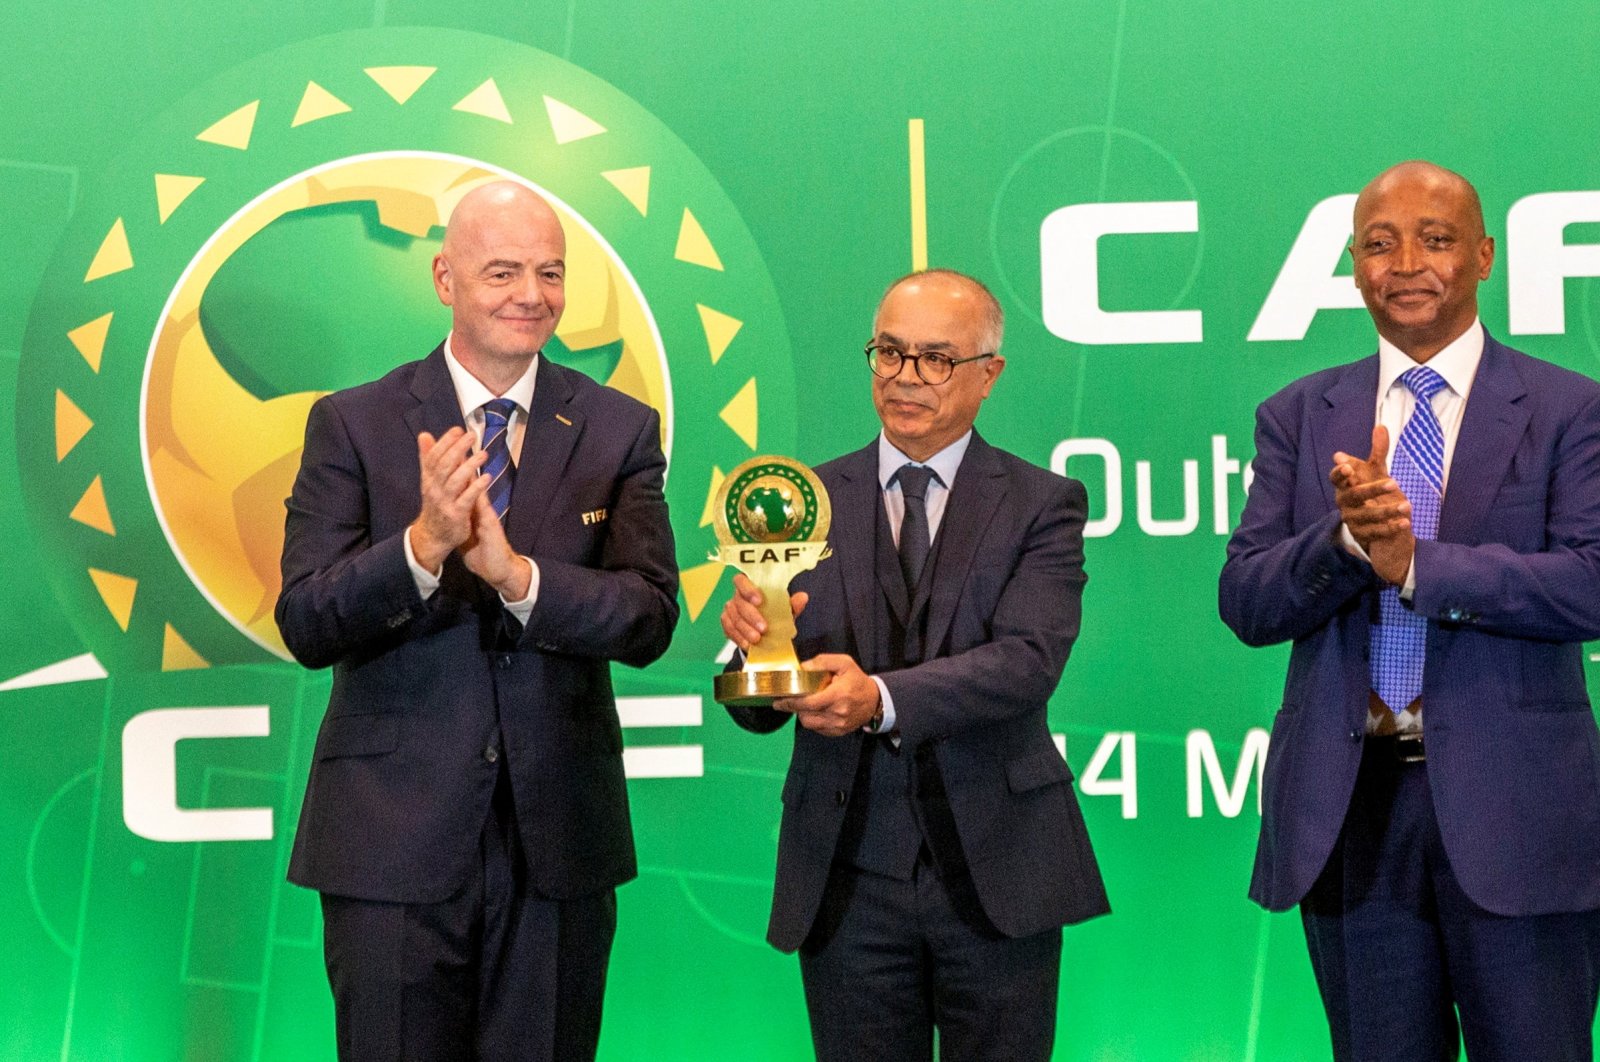 Maroko, Spanyol, Portugal dalam tawaran tripartit untuk Piala Dunia 2030